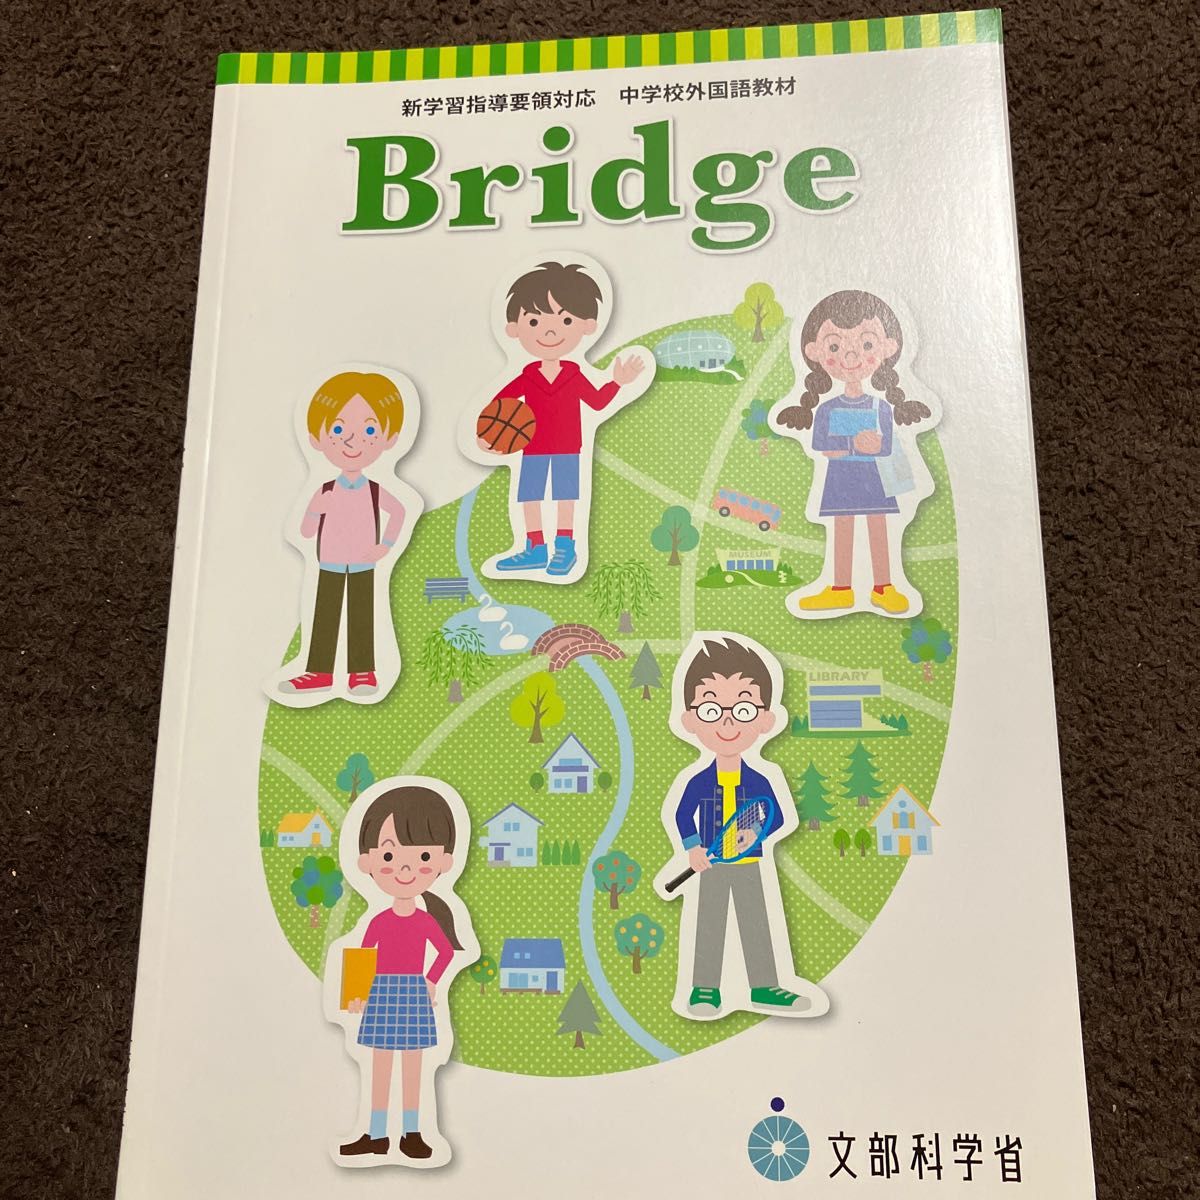 中学校 外国語教材 Bridge 新学習指導要領対応 文部科学省